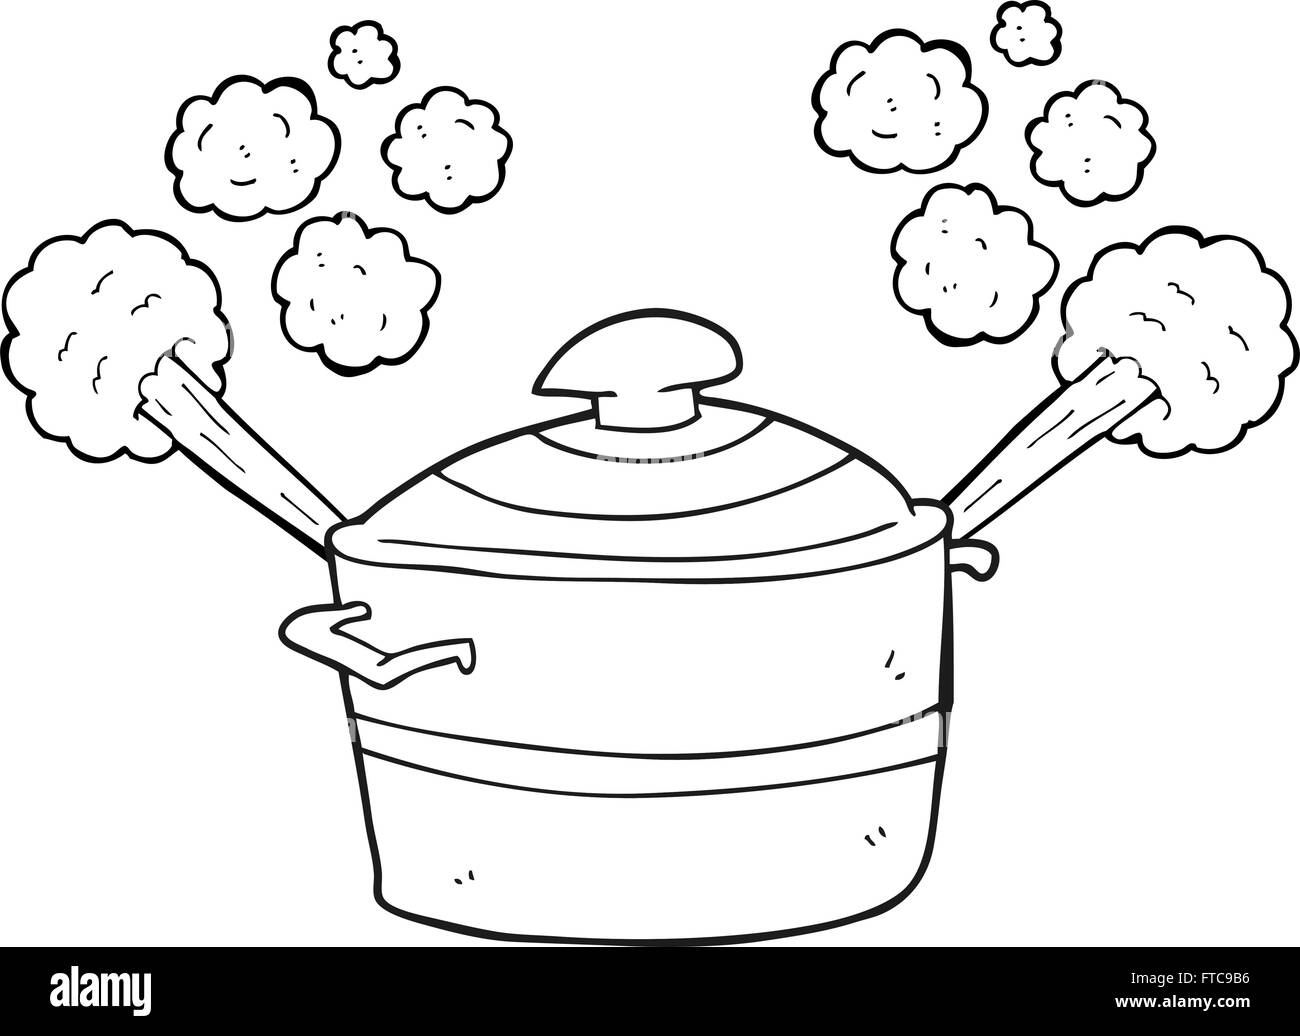 freihändig gezeichnet schwarz / weiß Cartoon dampfenden Kochtopf  Stock-Vektorgrafik - Alamy